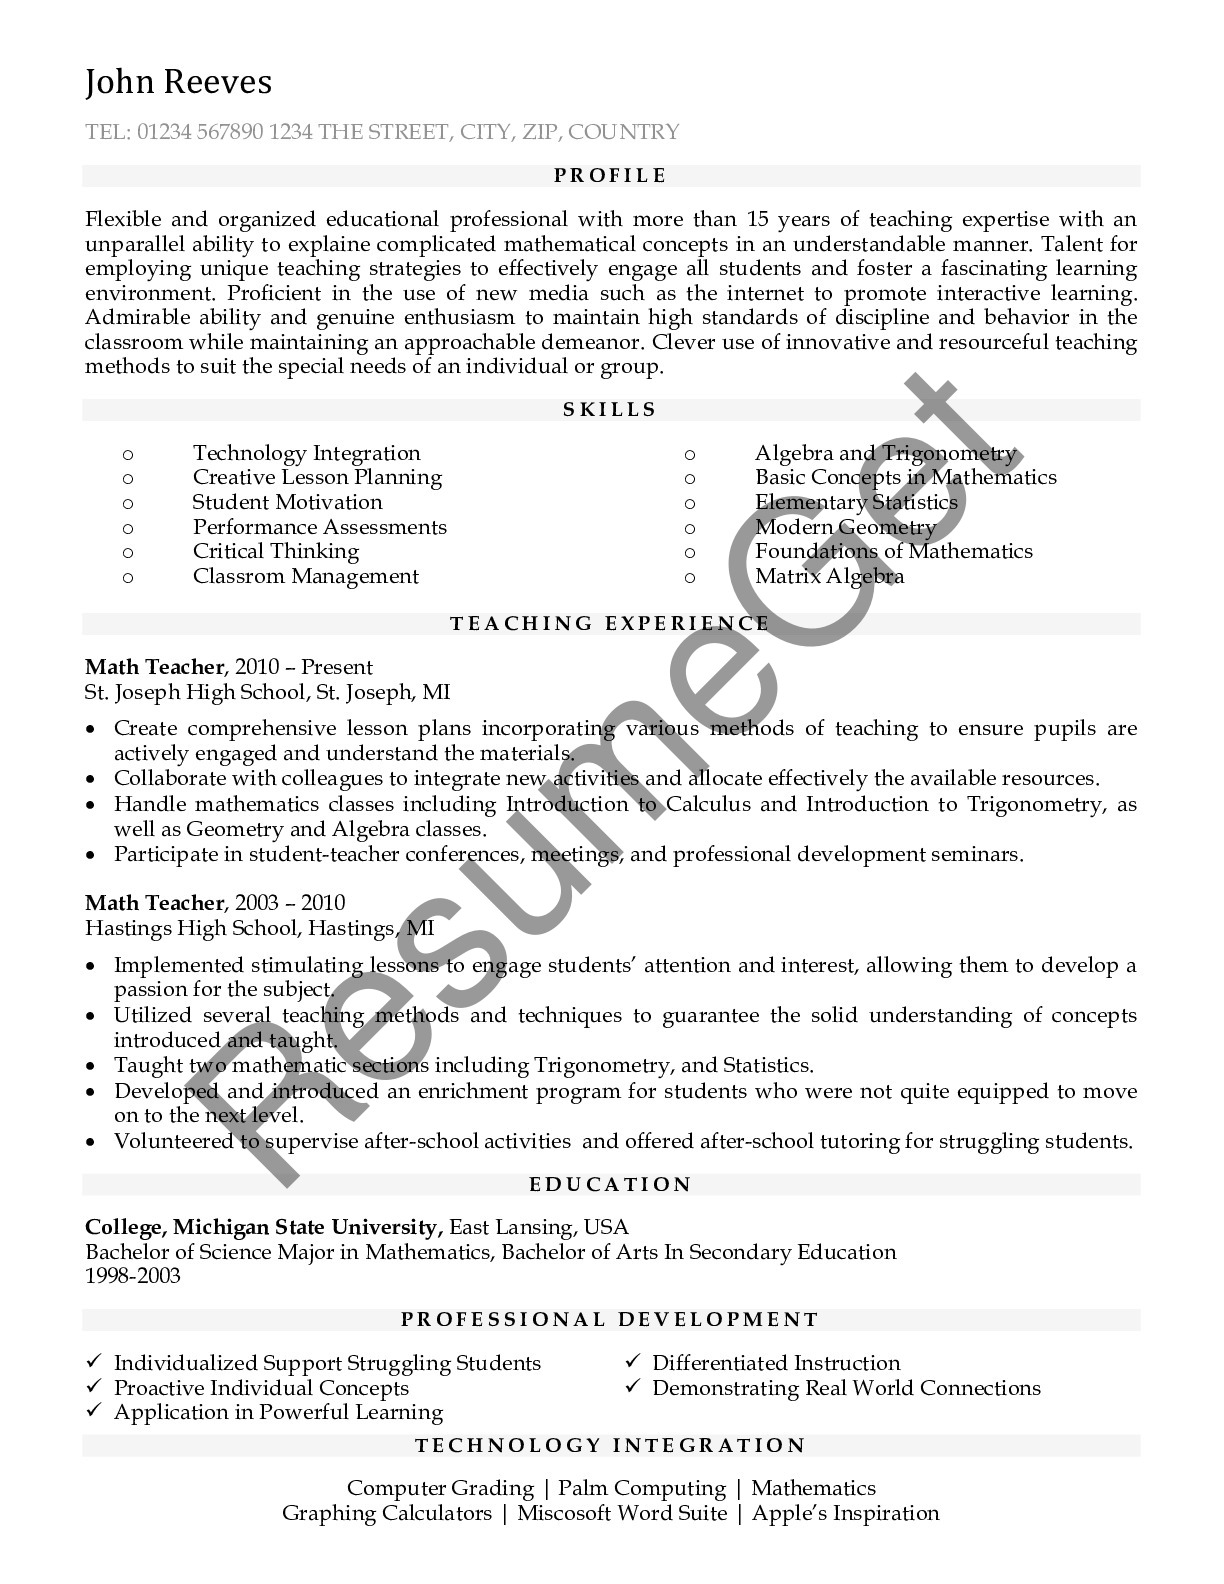 functional resume for teacher